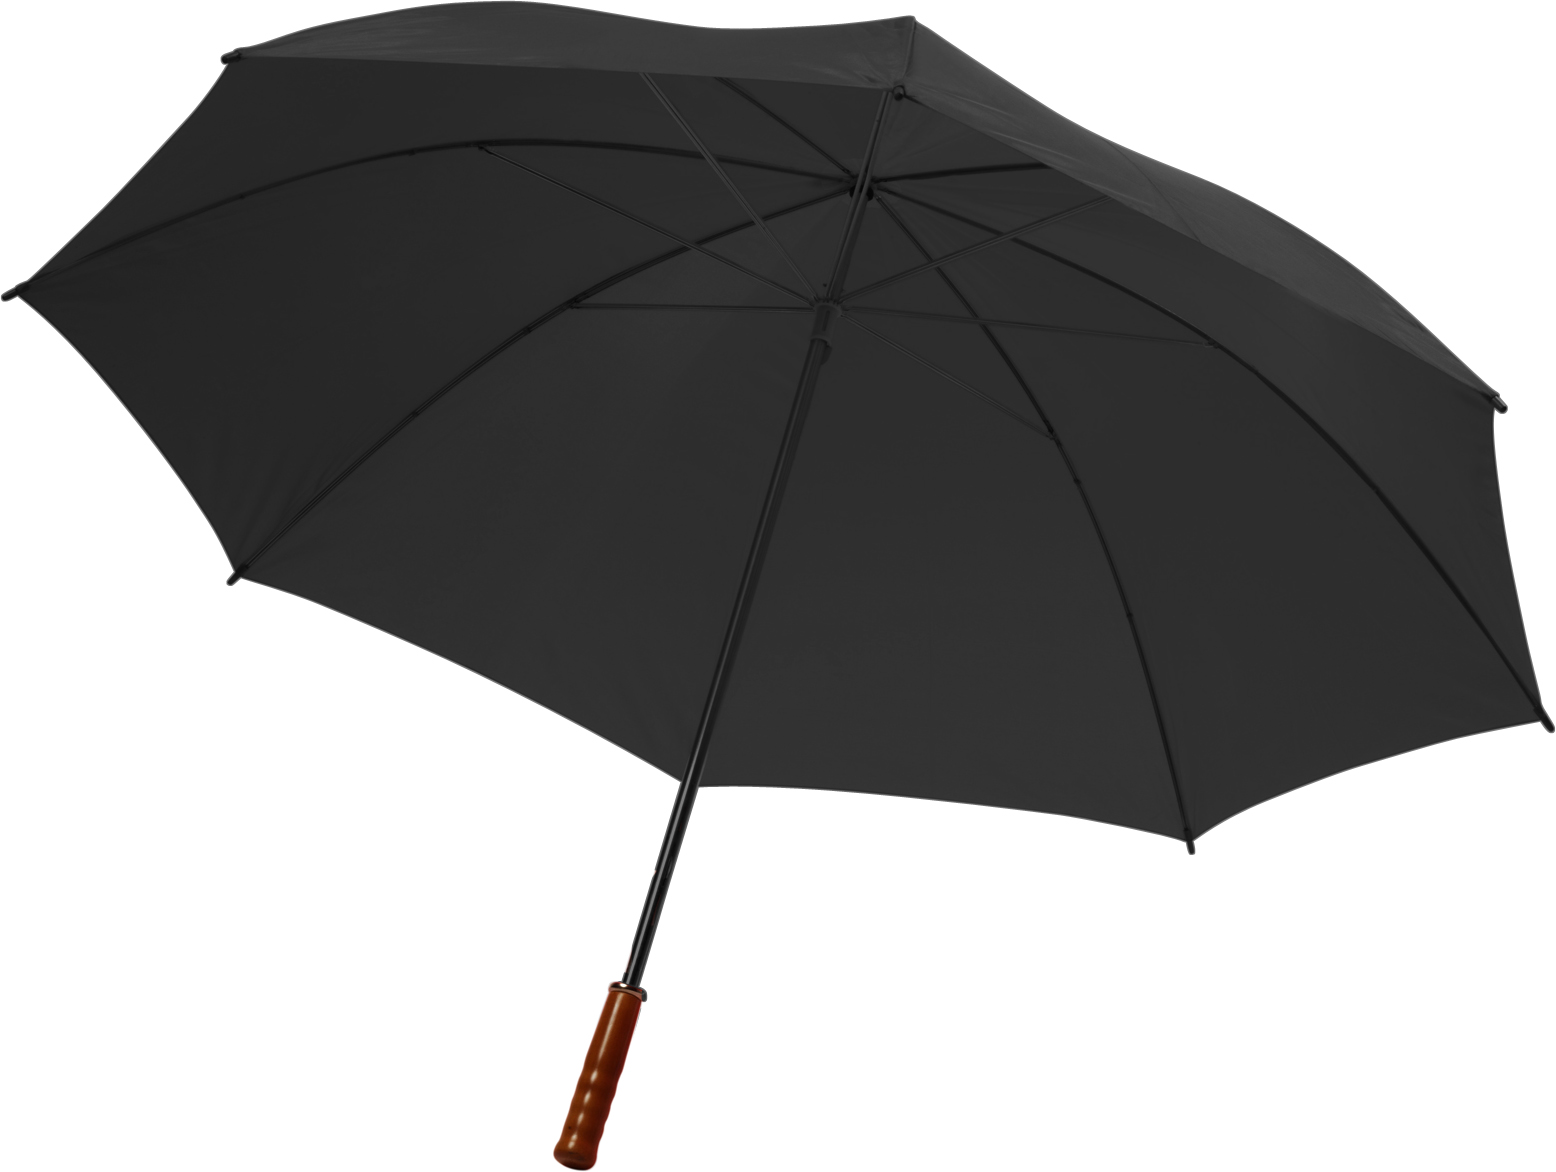 004066 001999999 3d045 ins pro01 fal - Polyester (190T) umbrella